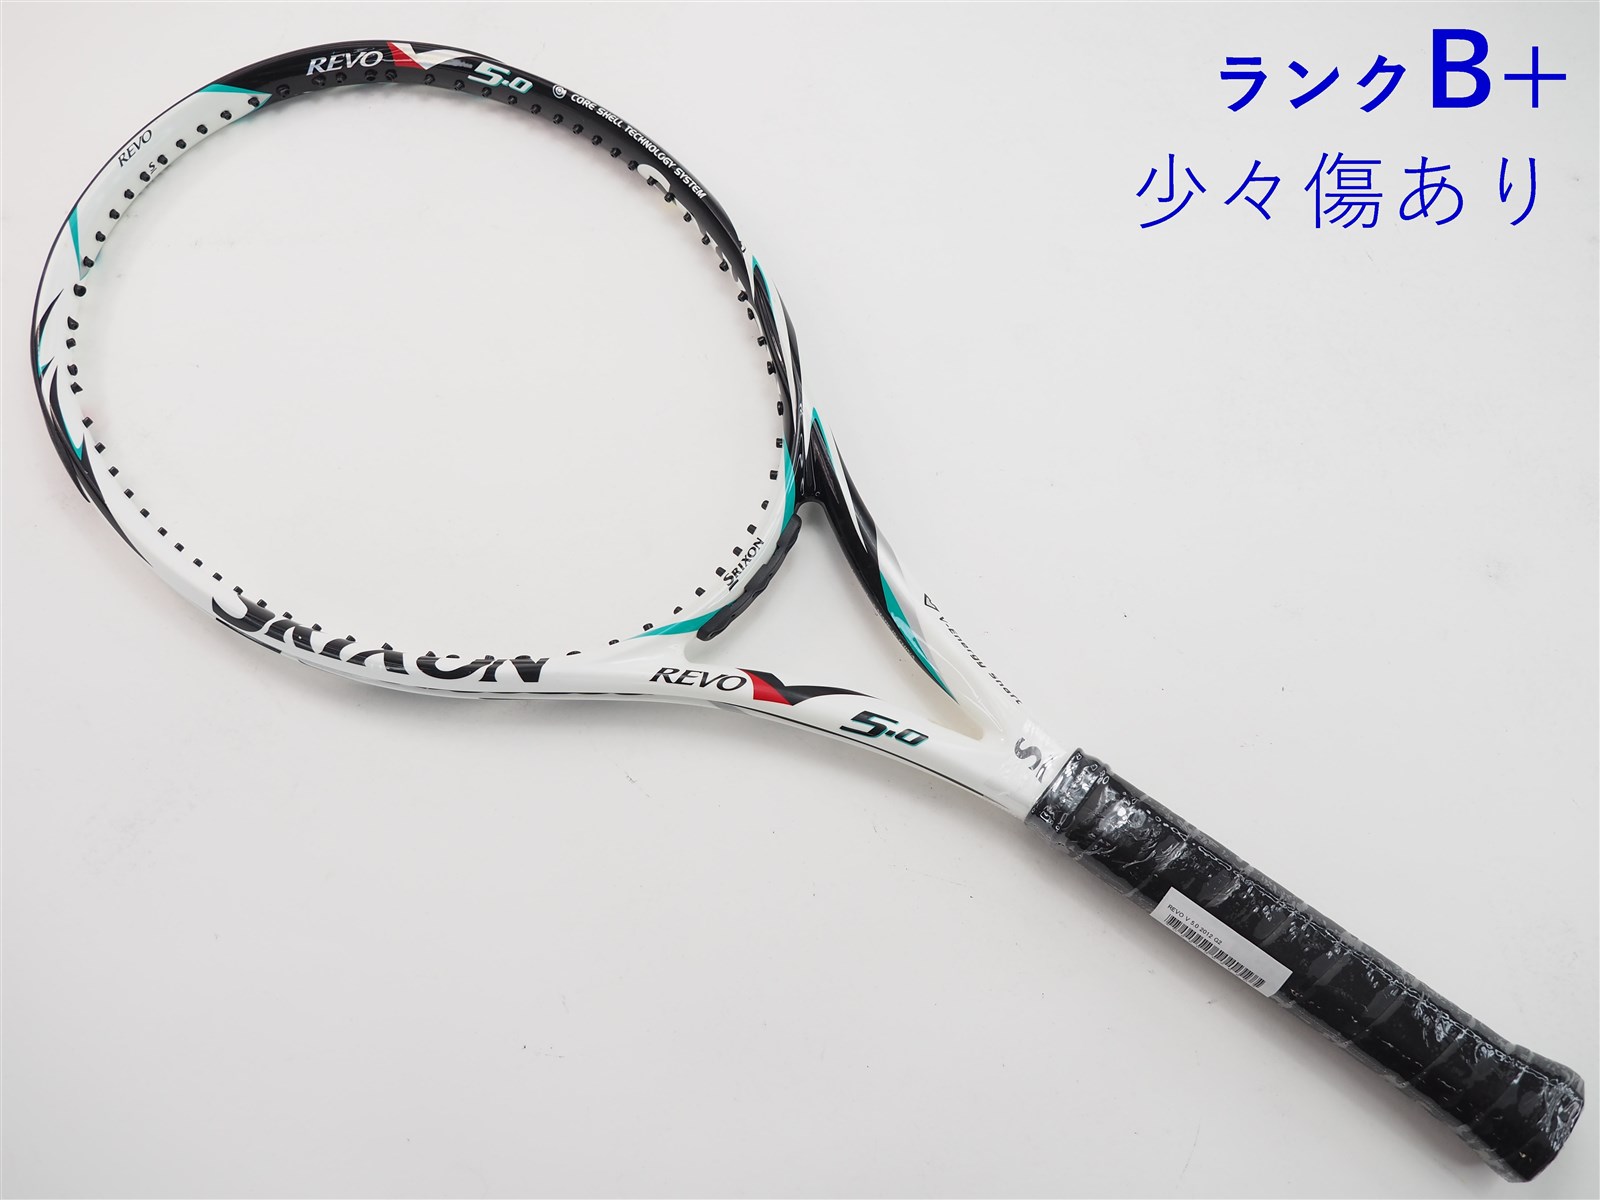 テニスラケット スリクソン レヴォ CV 5.0 OS 2018年モデル (G2)SRIXON REVO CV 5.0 OS 2018